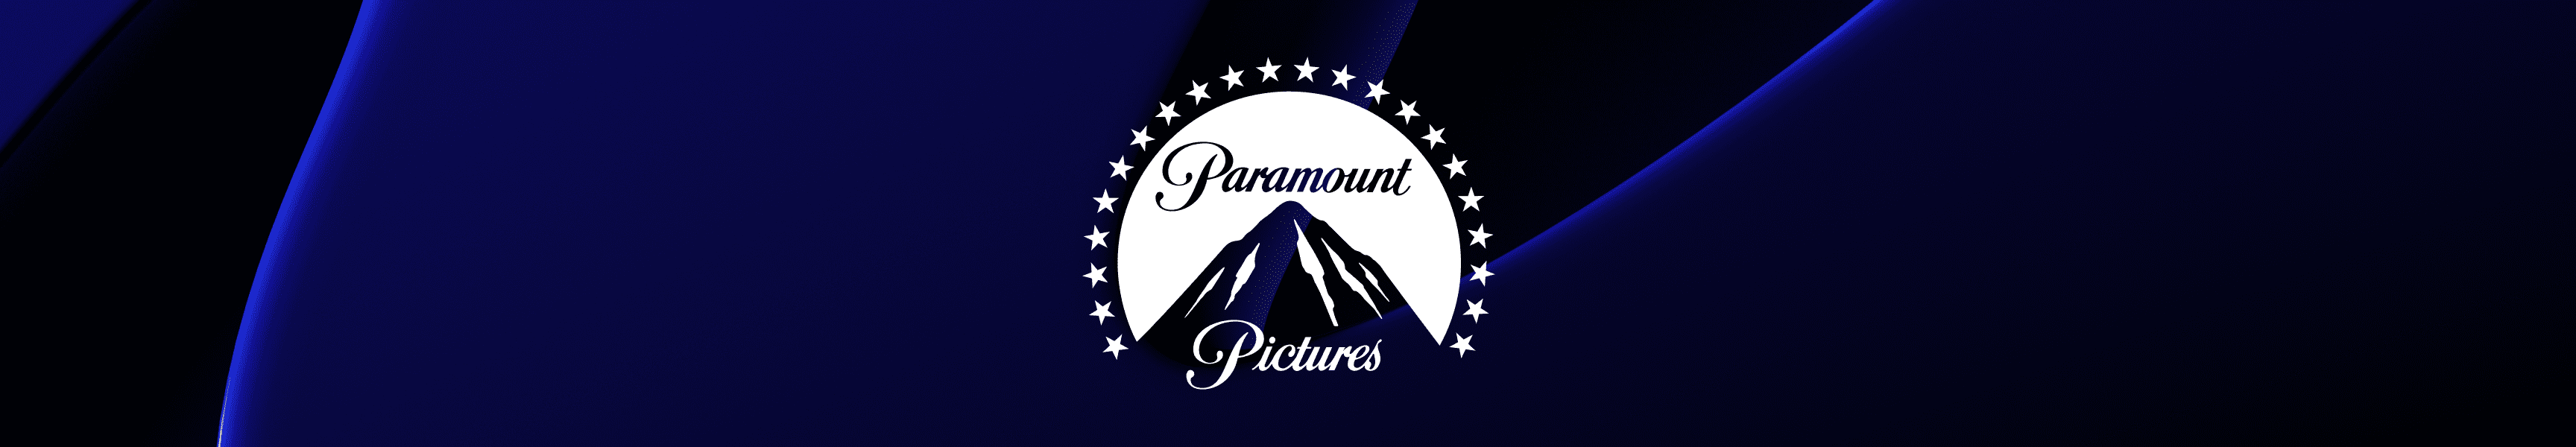 Paramount Pictures Leggings